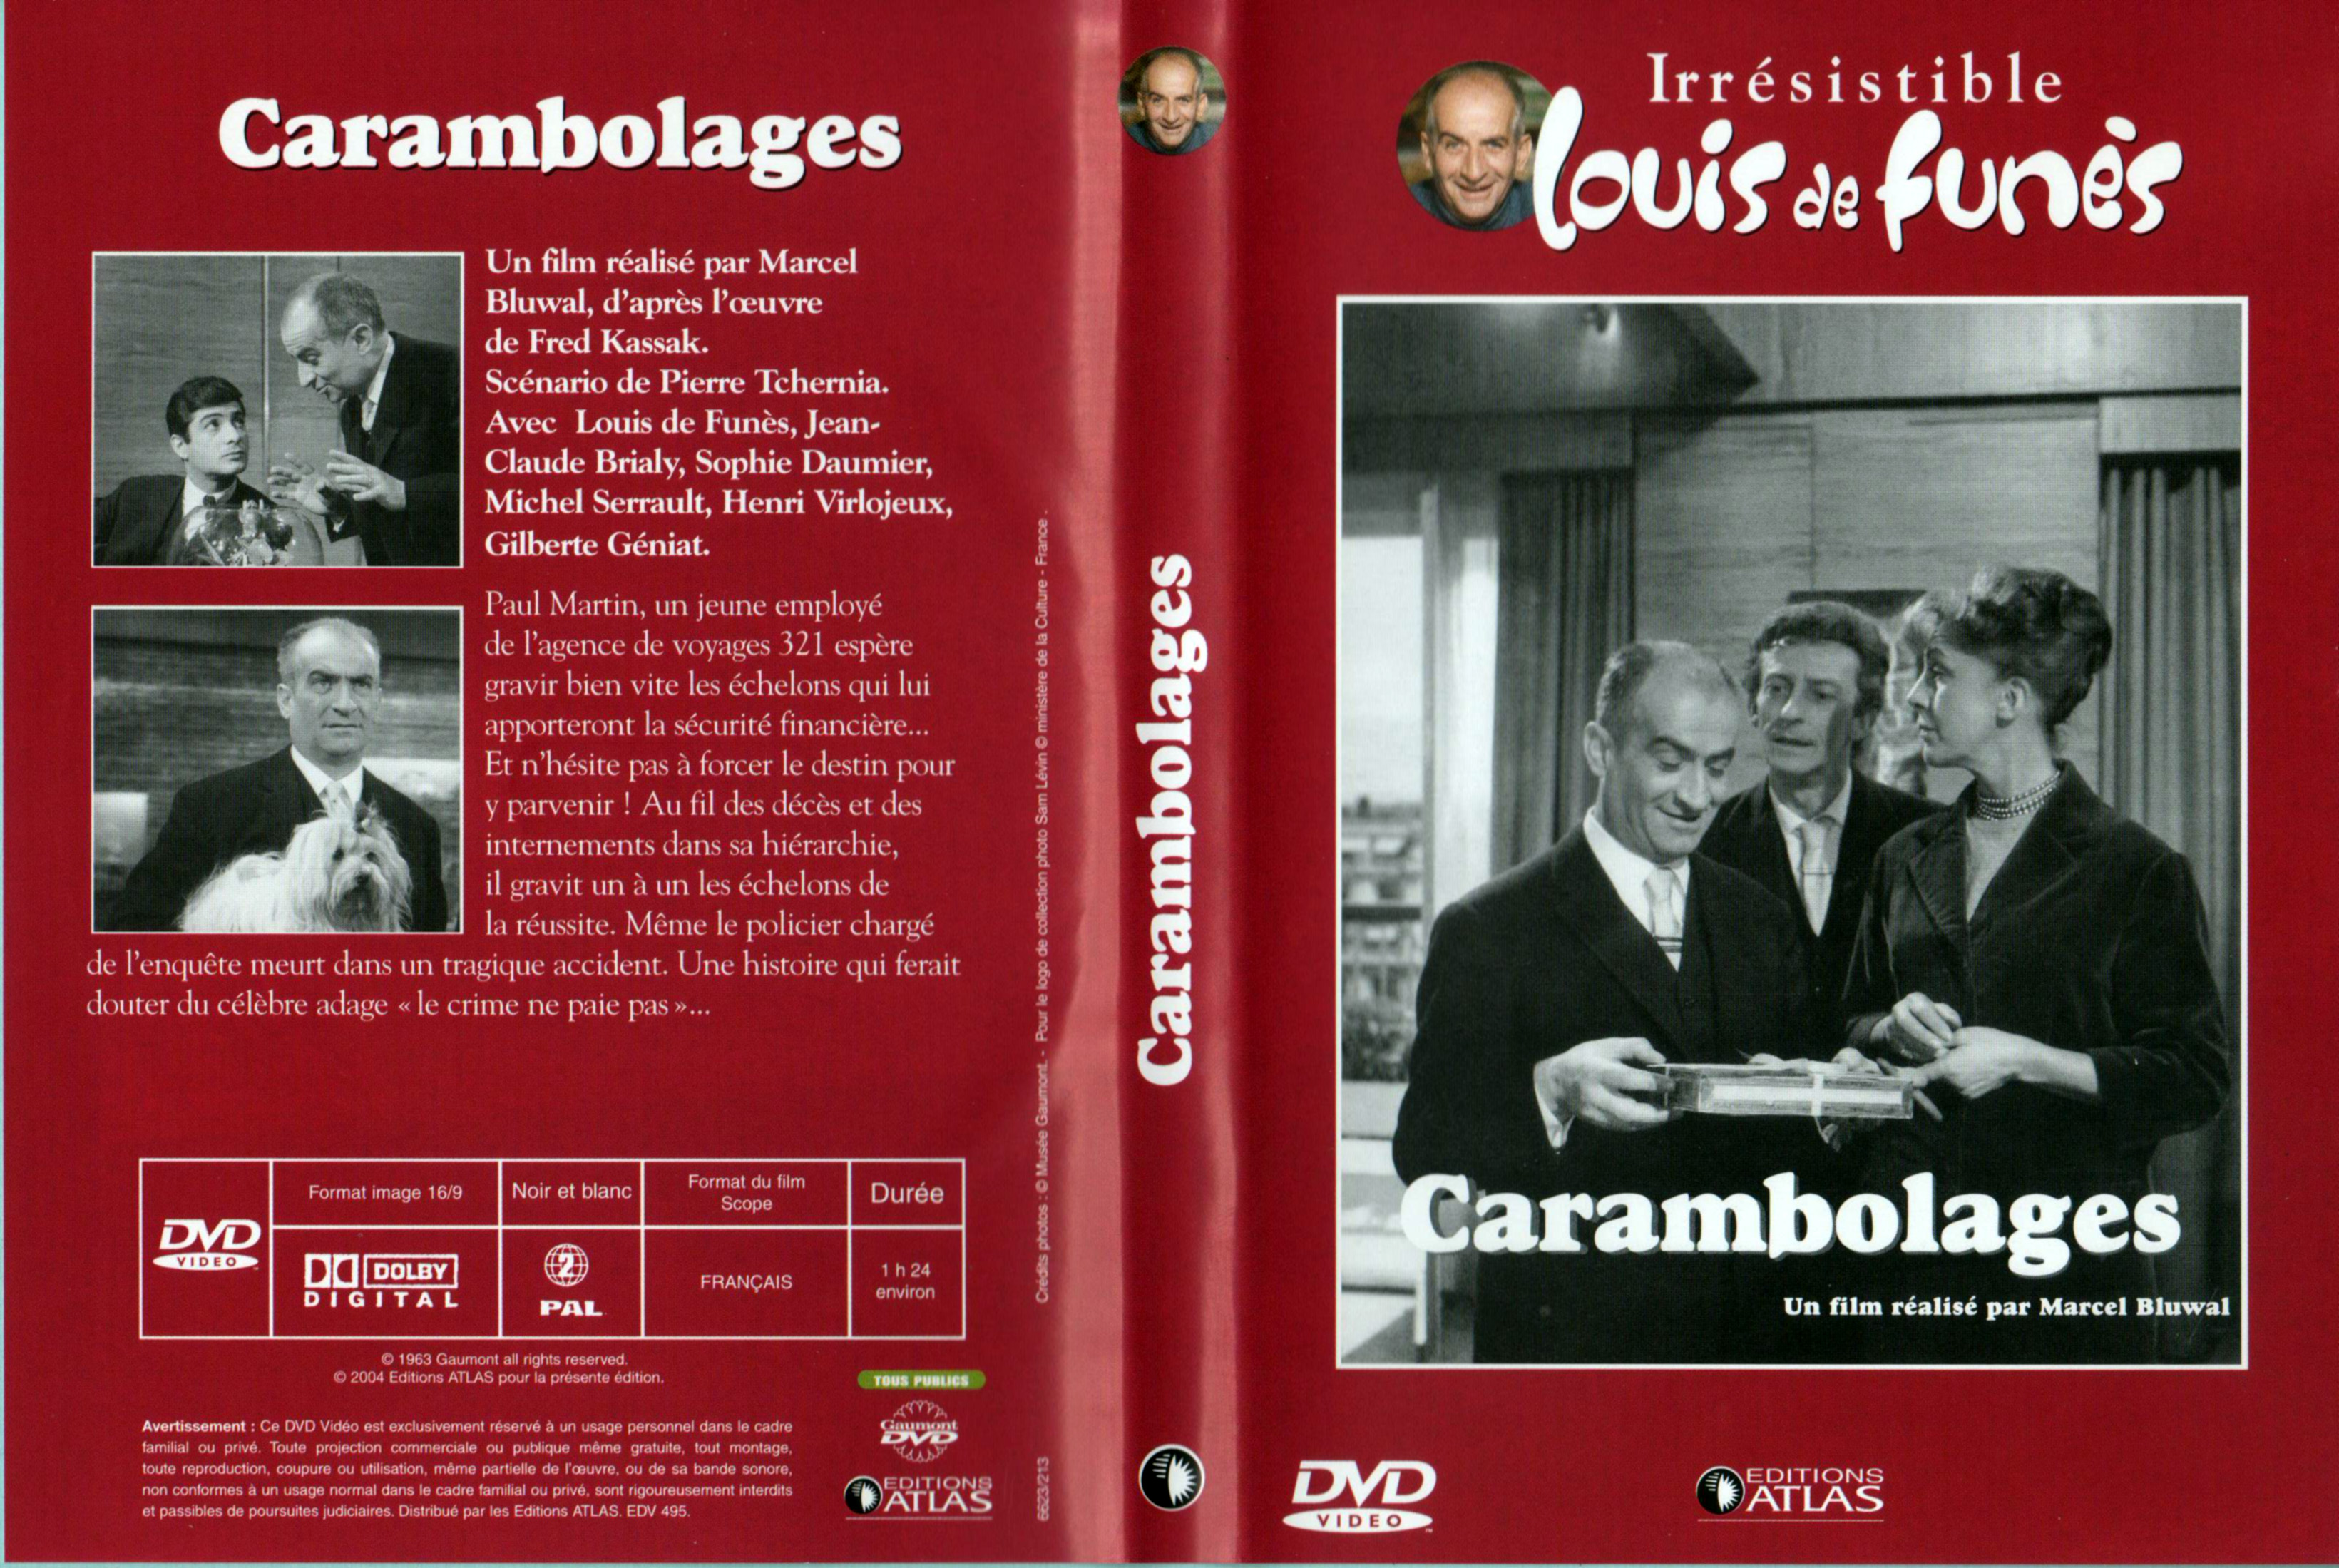 Jaquette Dvd De Carambolages V2 Cinéma Passion